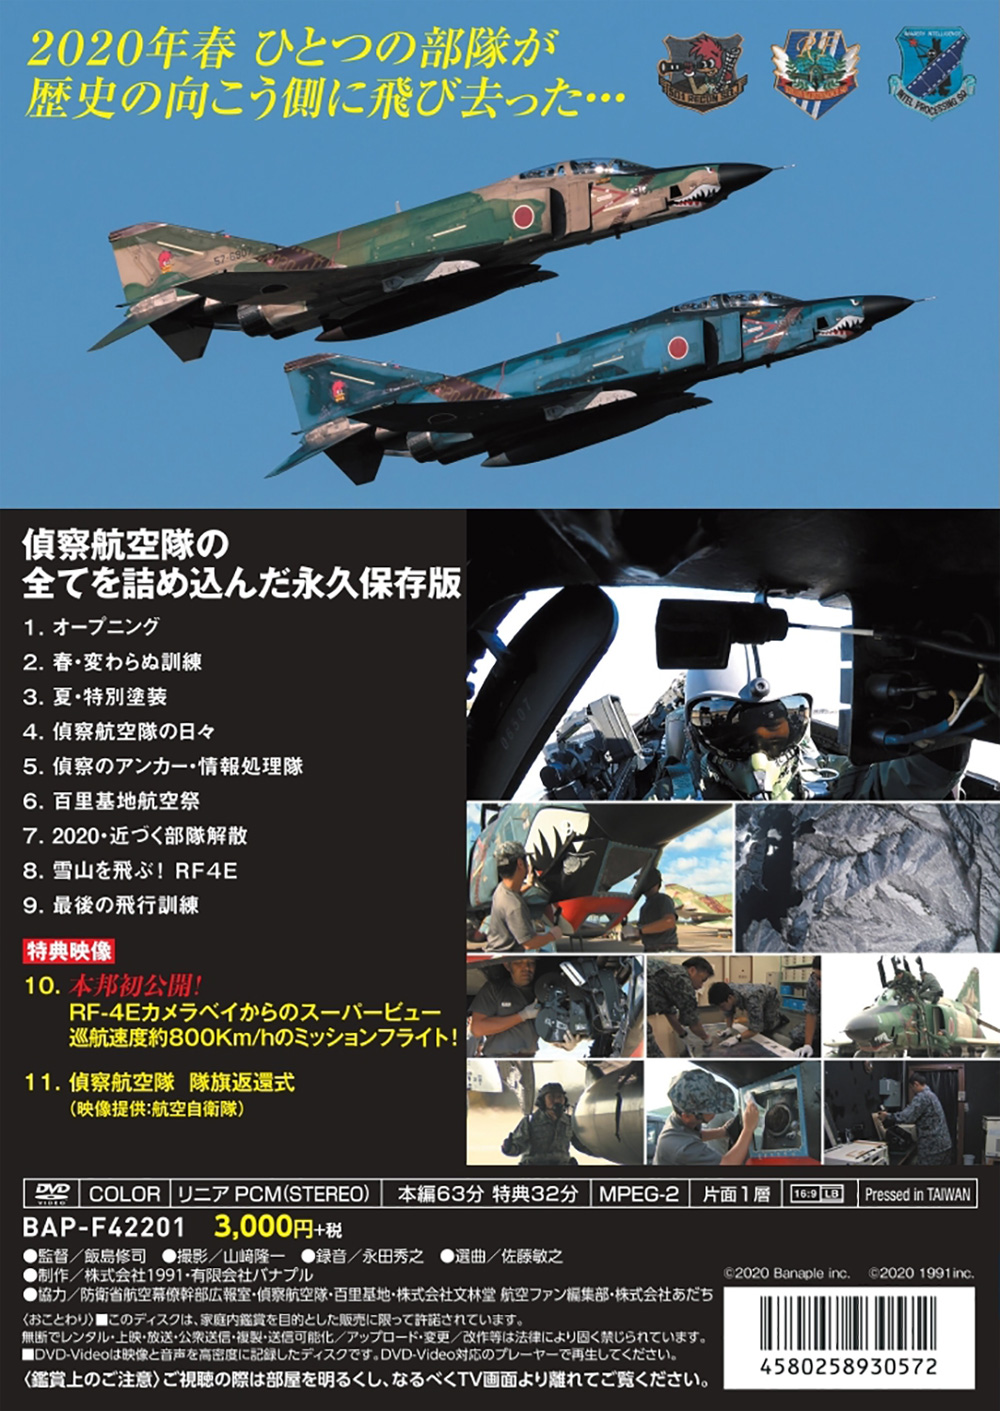 THE LAST PHANTOM 偵察航空隊 DVD (バナプル その他 DVD・ブルーレイ No.BAP-F42201) 商品画像_1